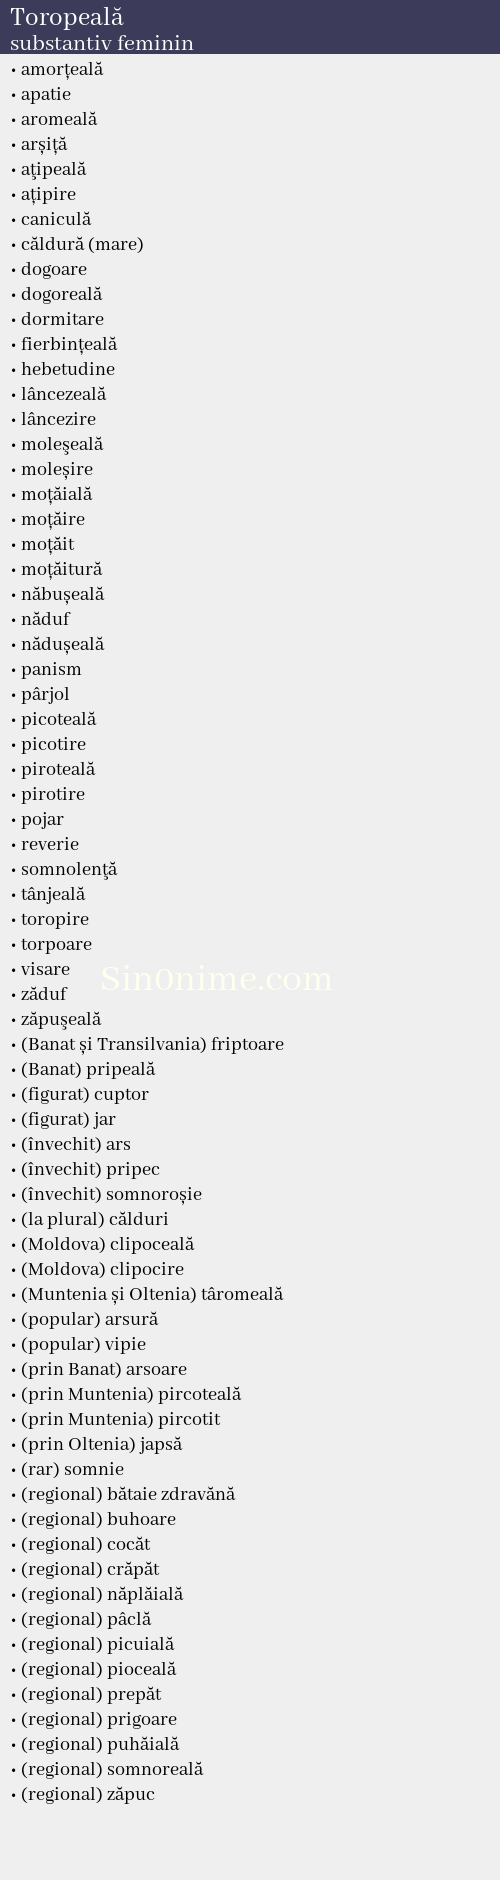 Toropeală, substantiv feminin - dicționar de sinonime